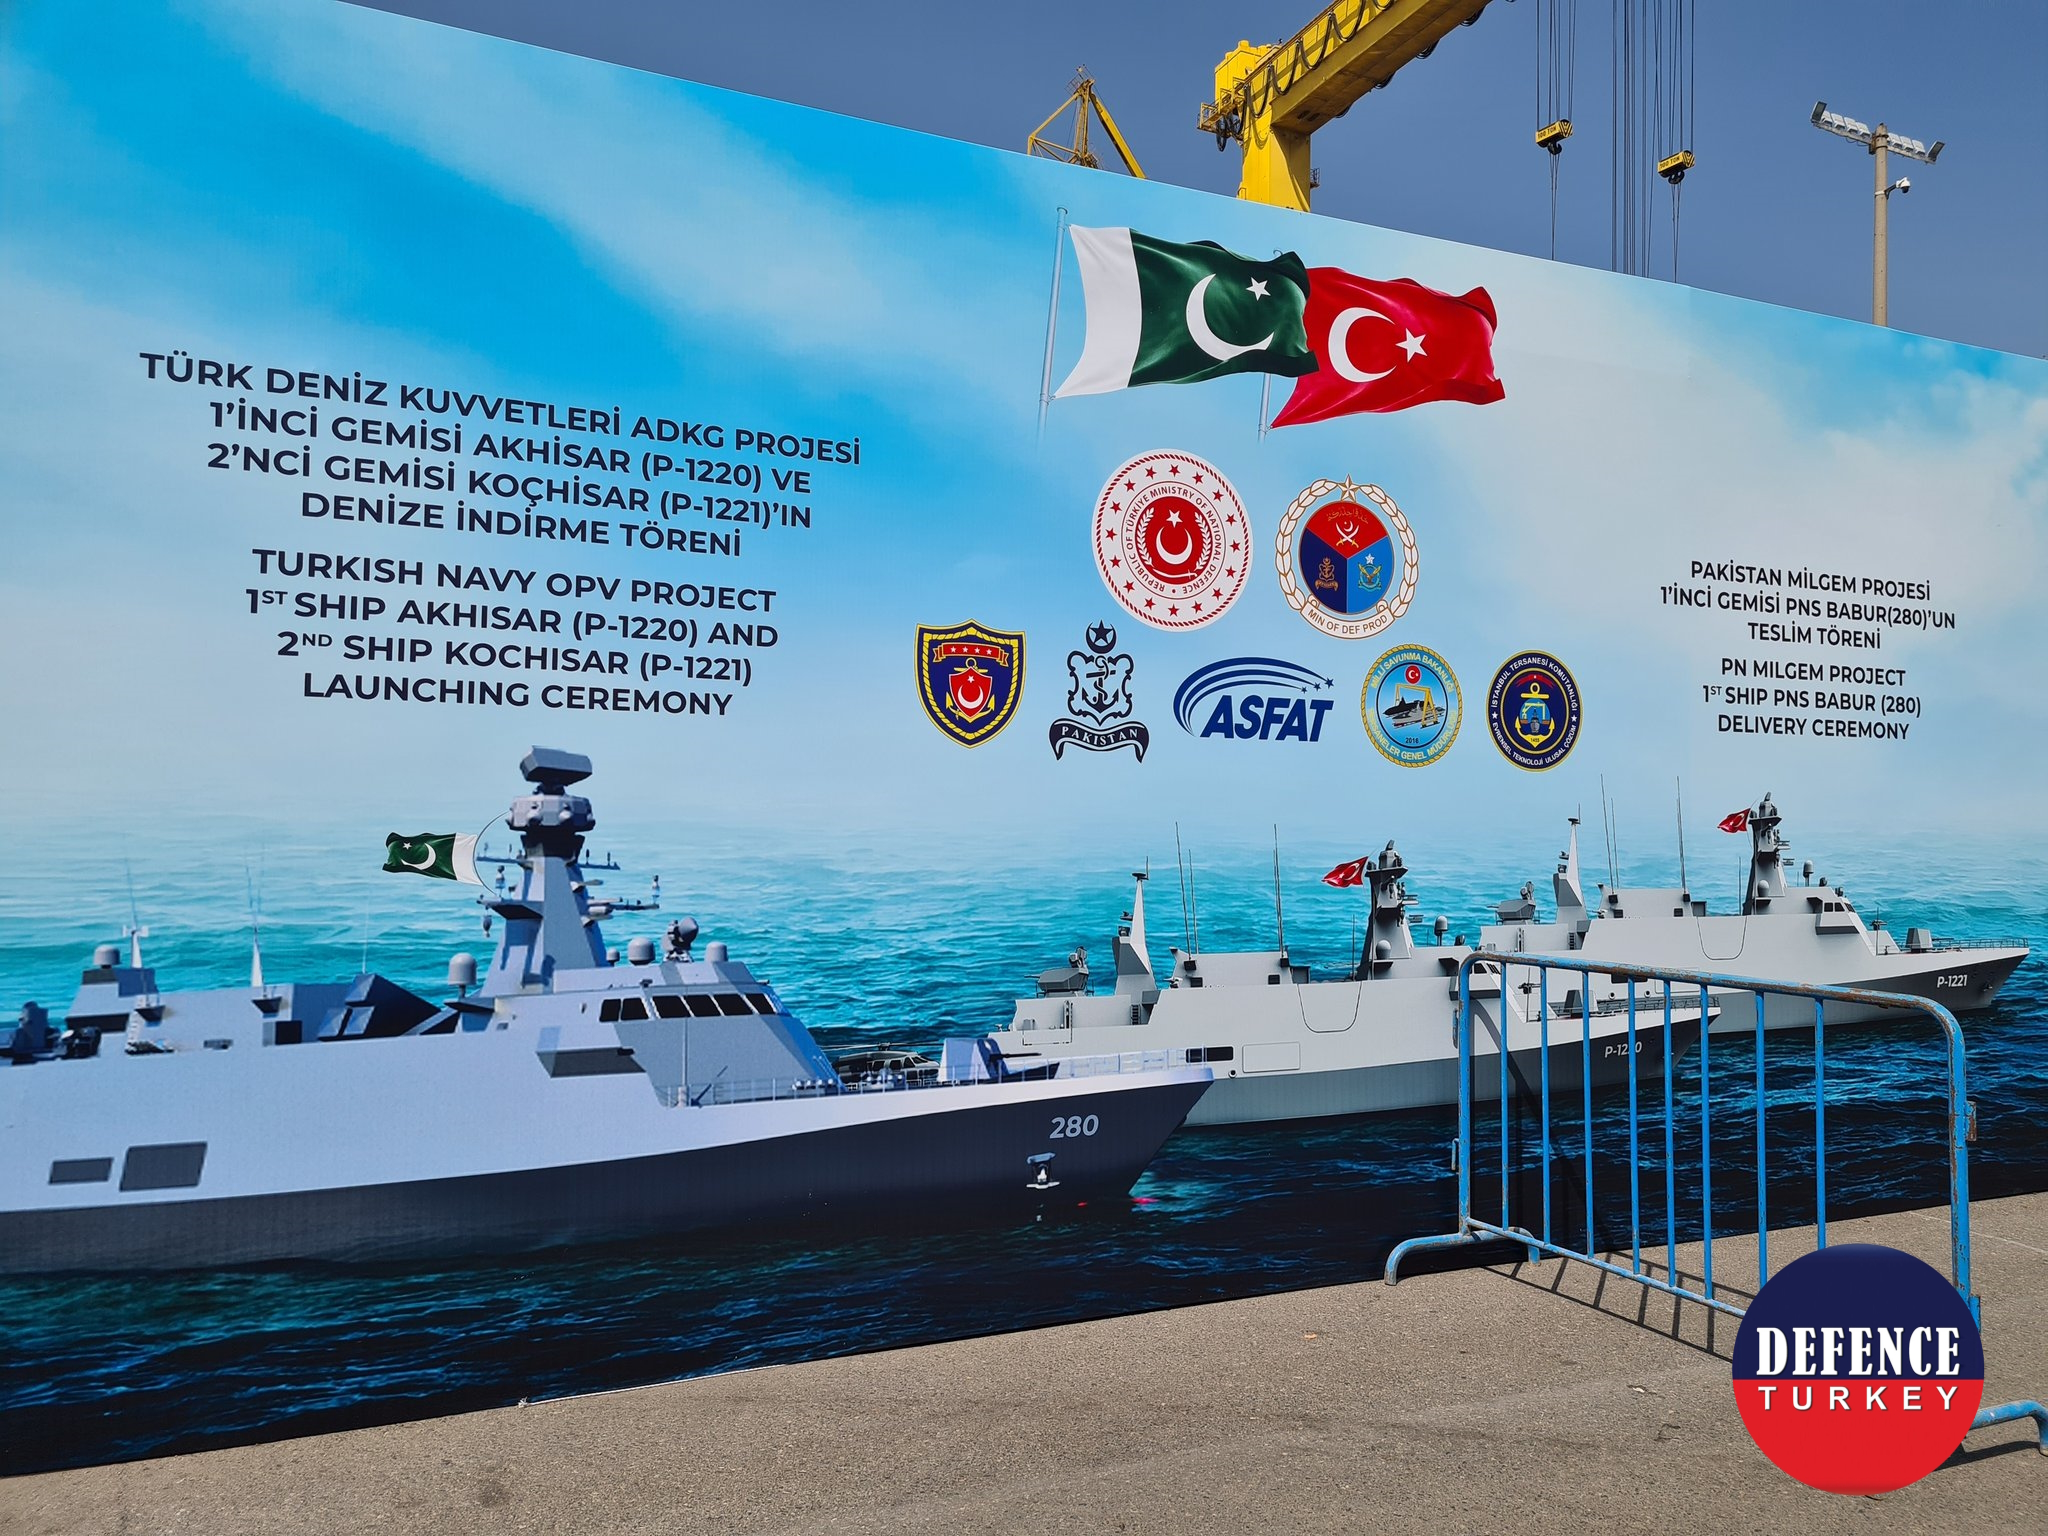 Pakistan MİLGEM Projesi 1’inci Gemisi PNS BABUR (280), Pakistan Deniz Kuvvetlerine Teslim Edildi